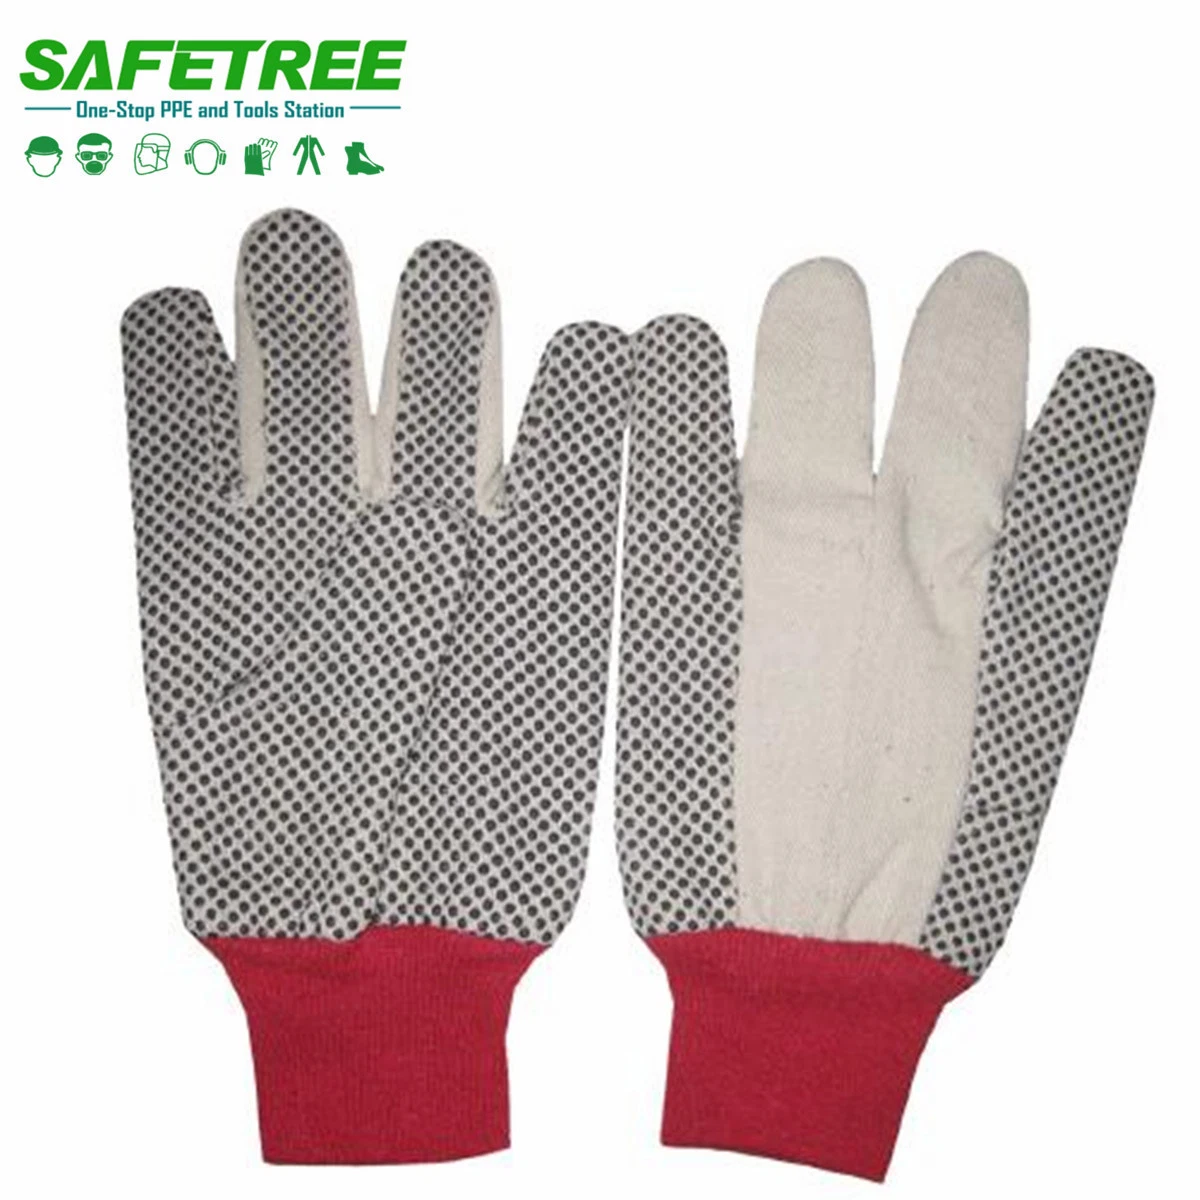 Lienzo de algodón de puntos de PVC Safetree guantes de algodón para uso industrial